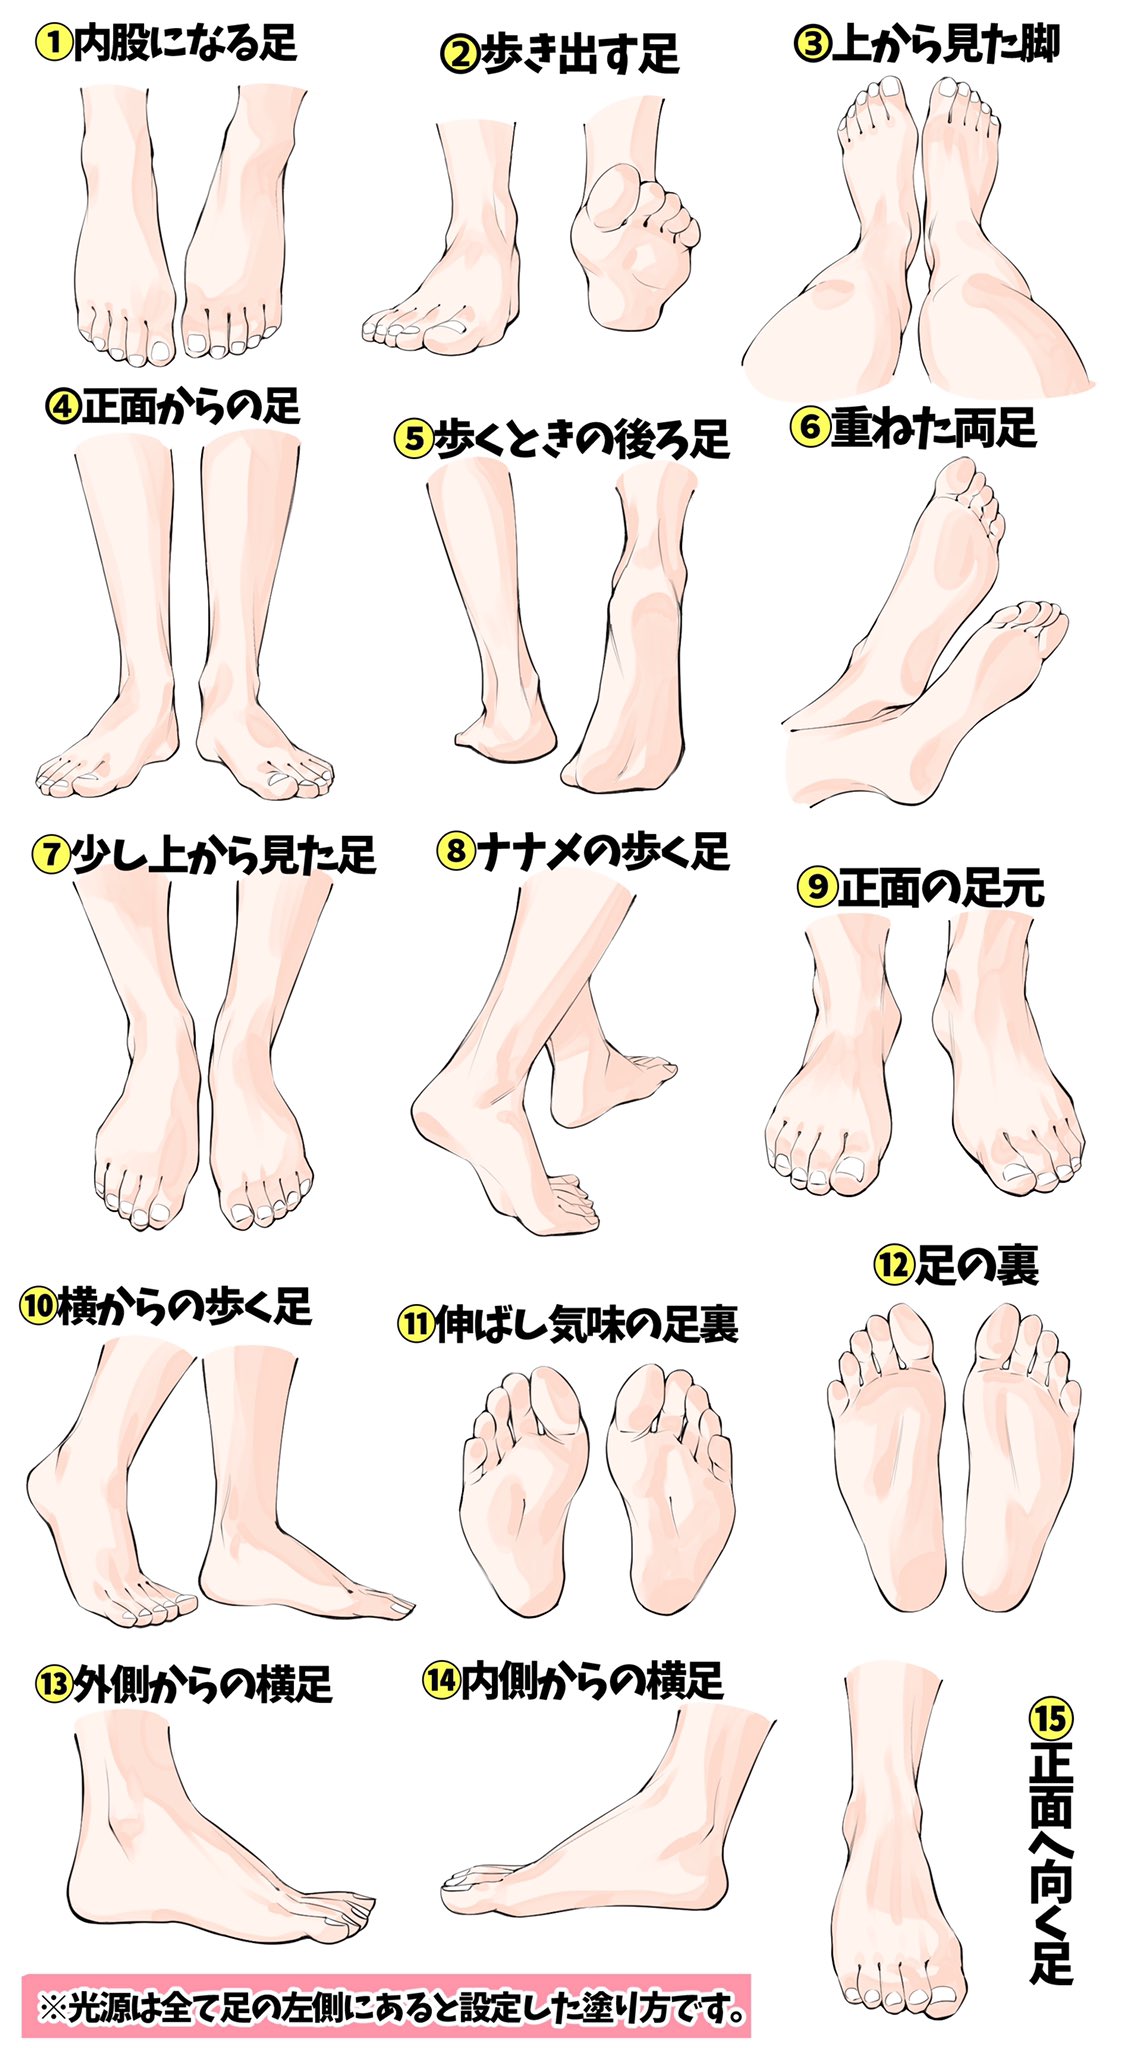 吉村拓也 イラスト講座 女性の足が苦手すぎる って人へ 足の線画と色塗り が上達できる 足の模写パターン表 です T Co Gcqsn9euep Twitter